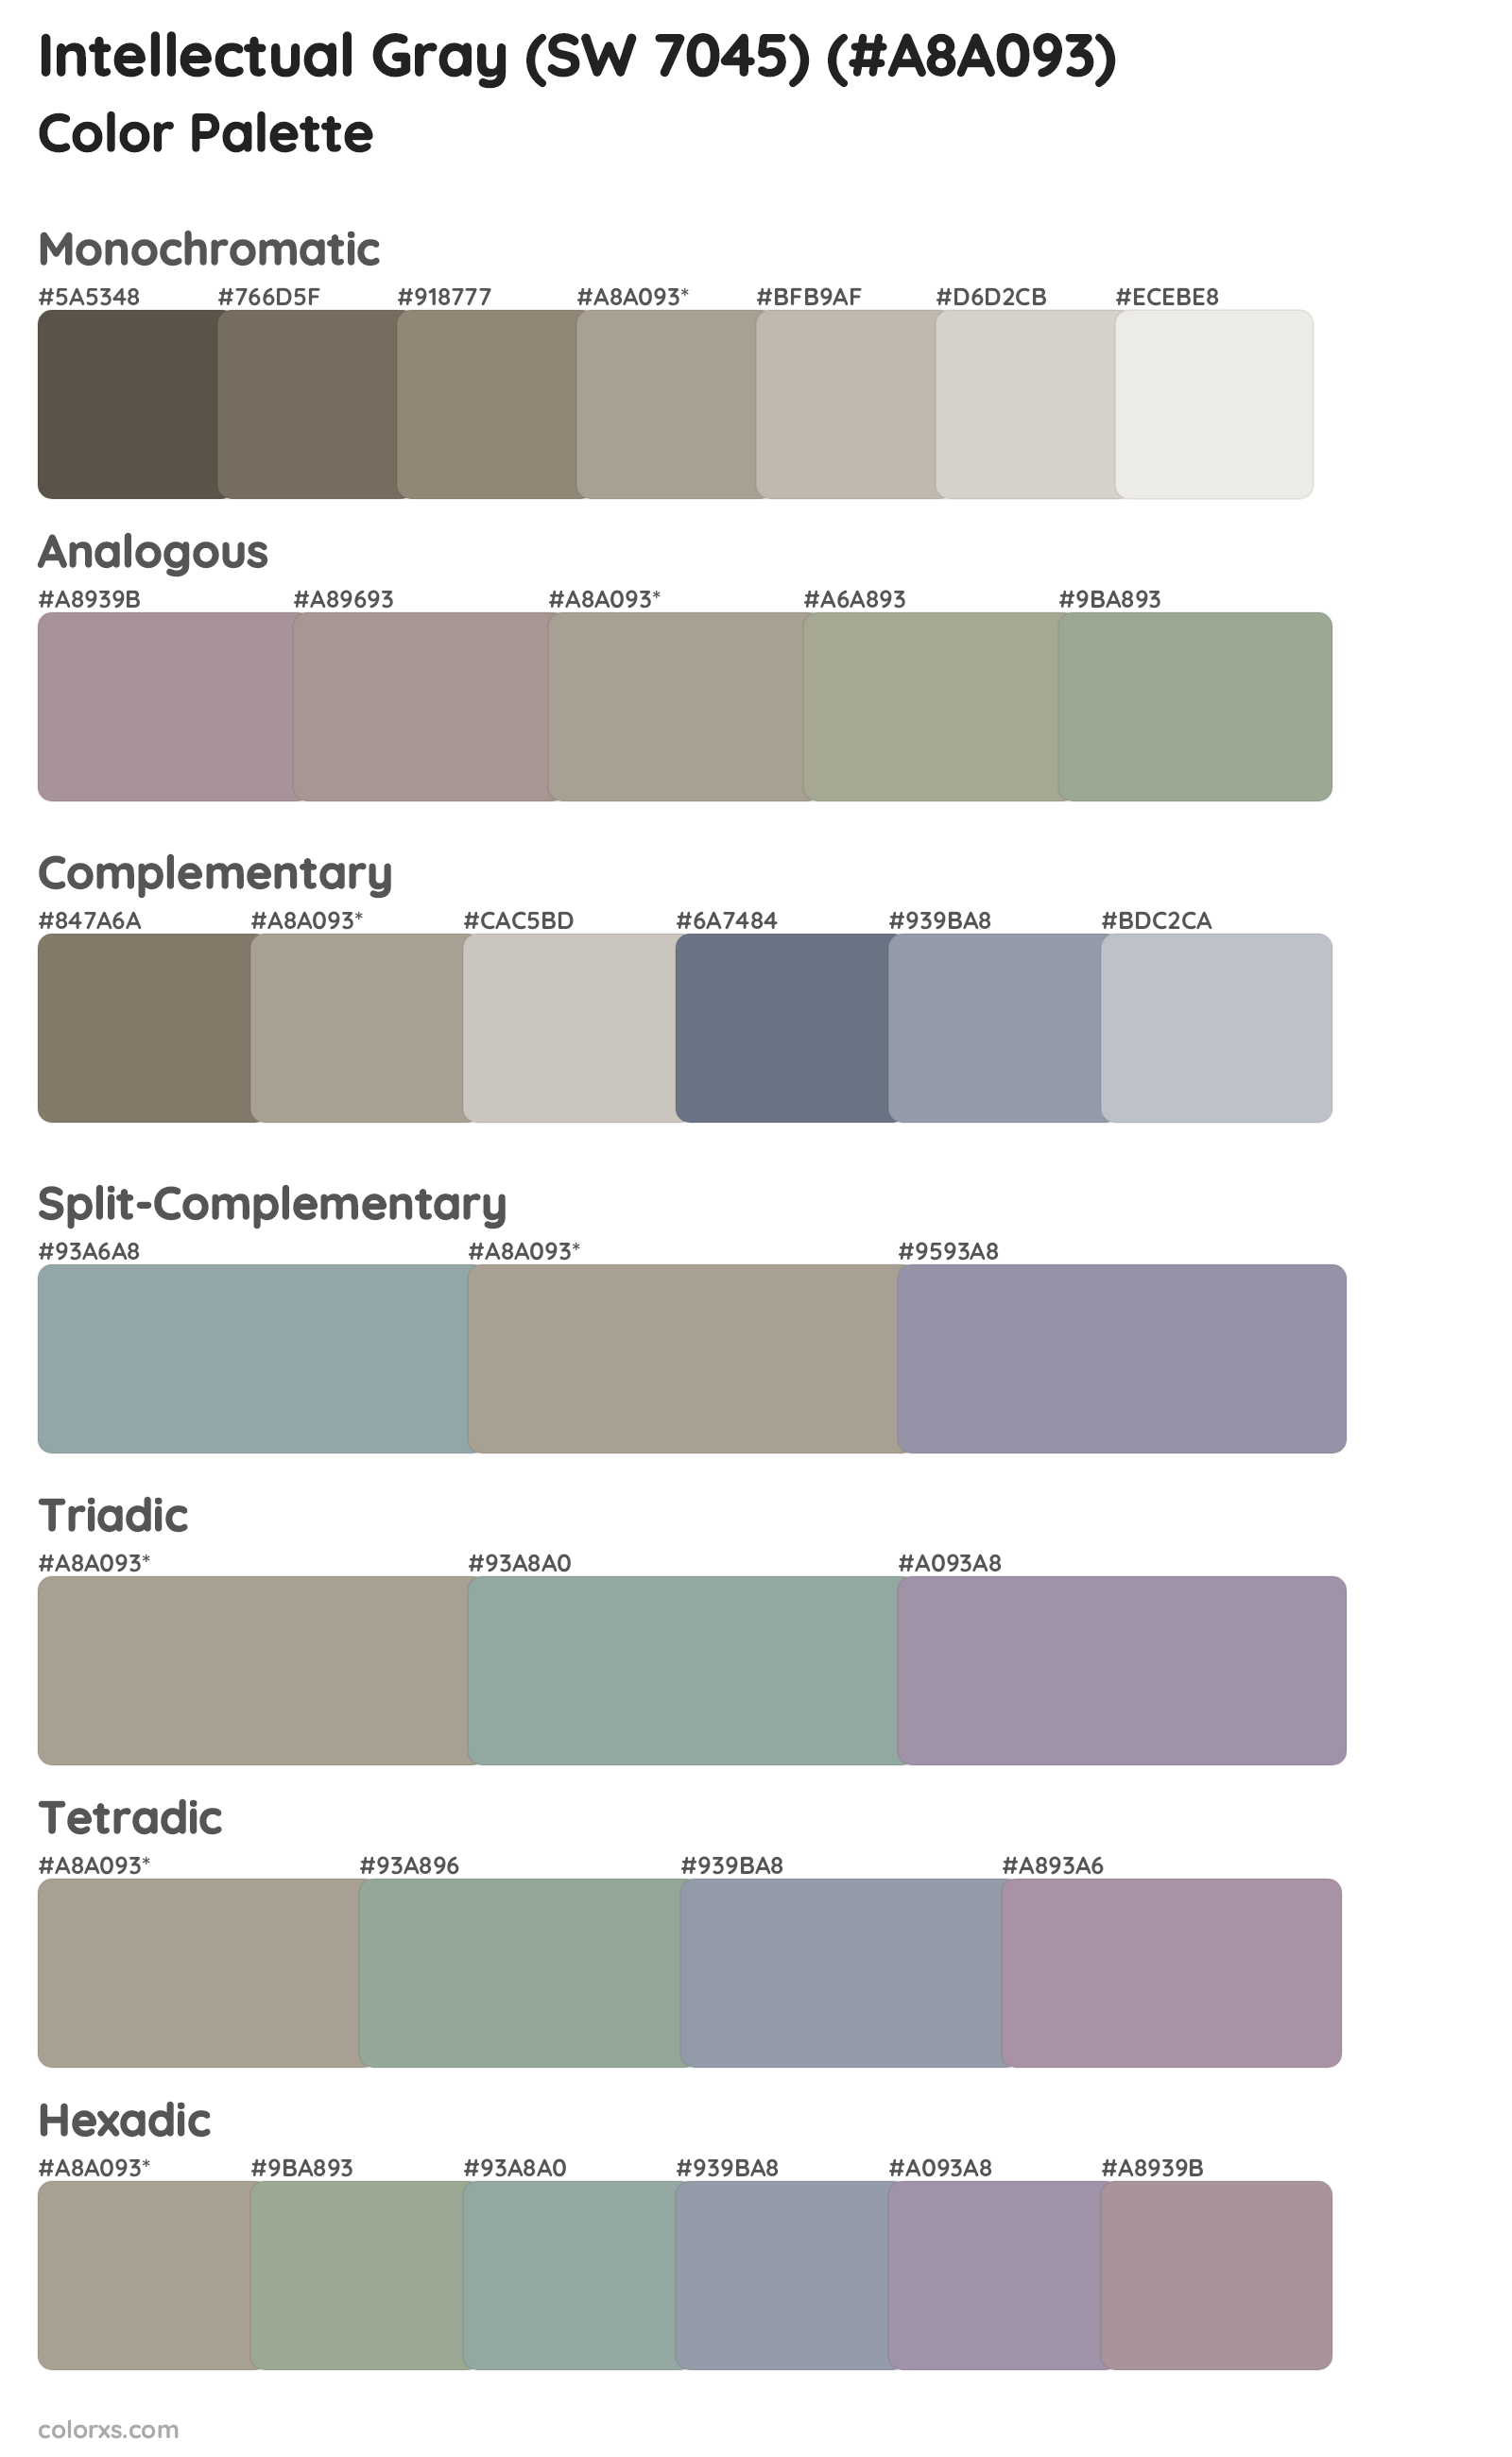 Intellectual Gray (SW 7045) Color Scheme Palettes